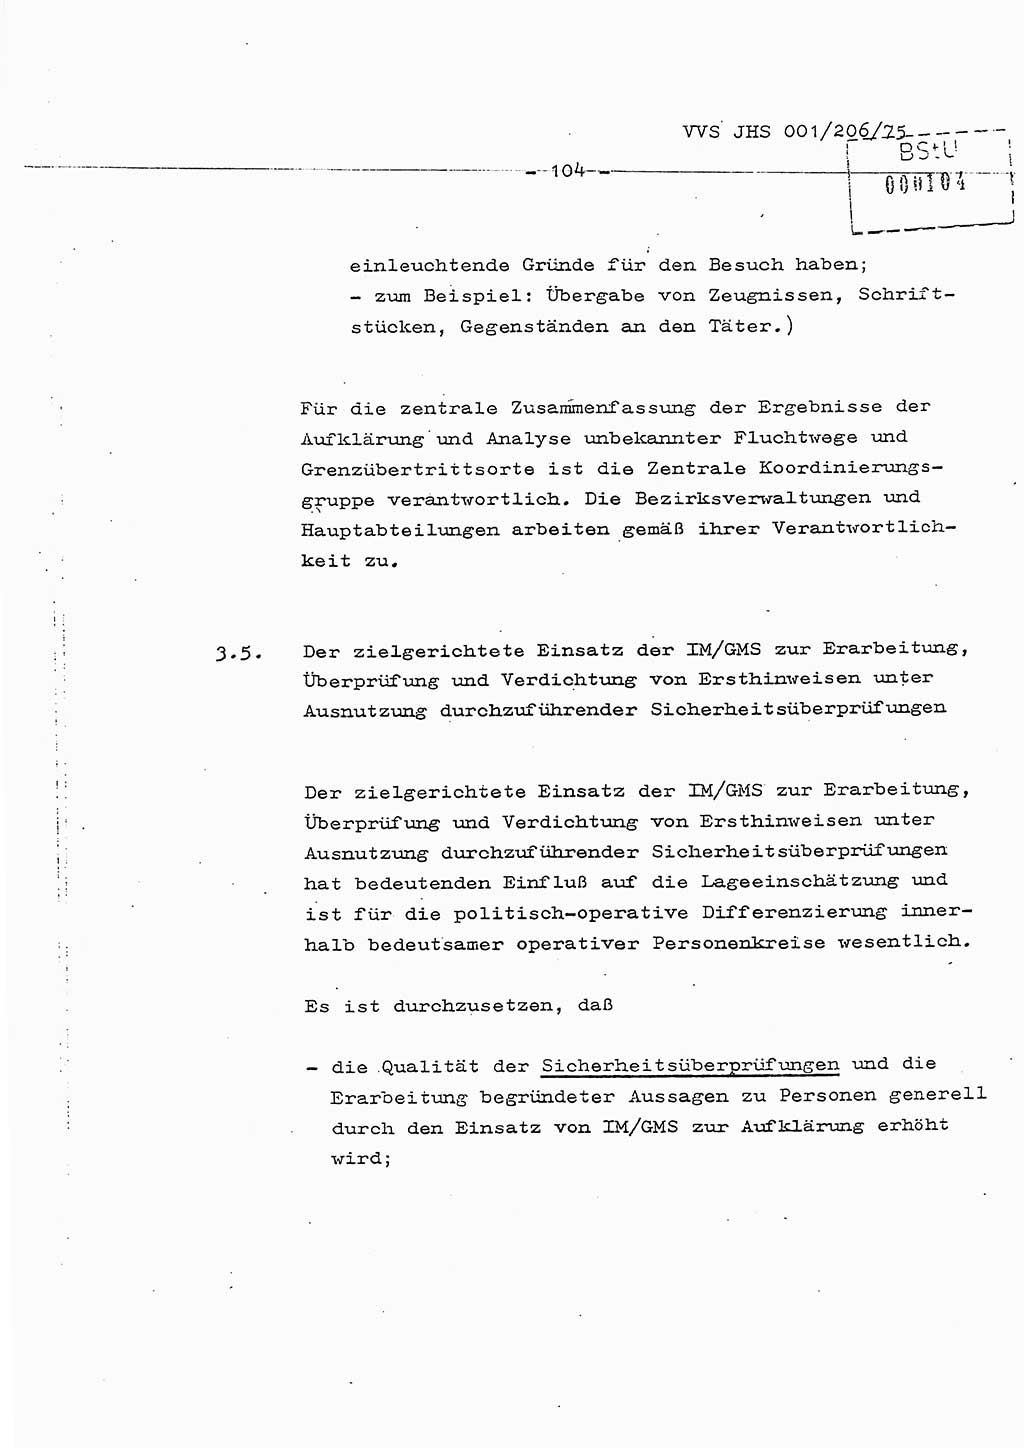 Dissertation Generalmajor Manfred Hummitzsch (Leiter der BV Leipzig), Generalmajor Heinz Fiedler (HA Ⅵ), Oberst Rolf Fister (HA Ⅸ), Ministerium für Staatssicherheit (MfS) [Deutsche Demokratische Republik (DDR)], Juristische Hochschule (JHS), Vertrauliche Verschlußsache (VVS) 001-206/75, Potsdam 1975, Seite 104 (Diss. MfS DDR JHS VVS 001-206/75 1975, S. 104)